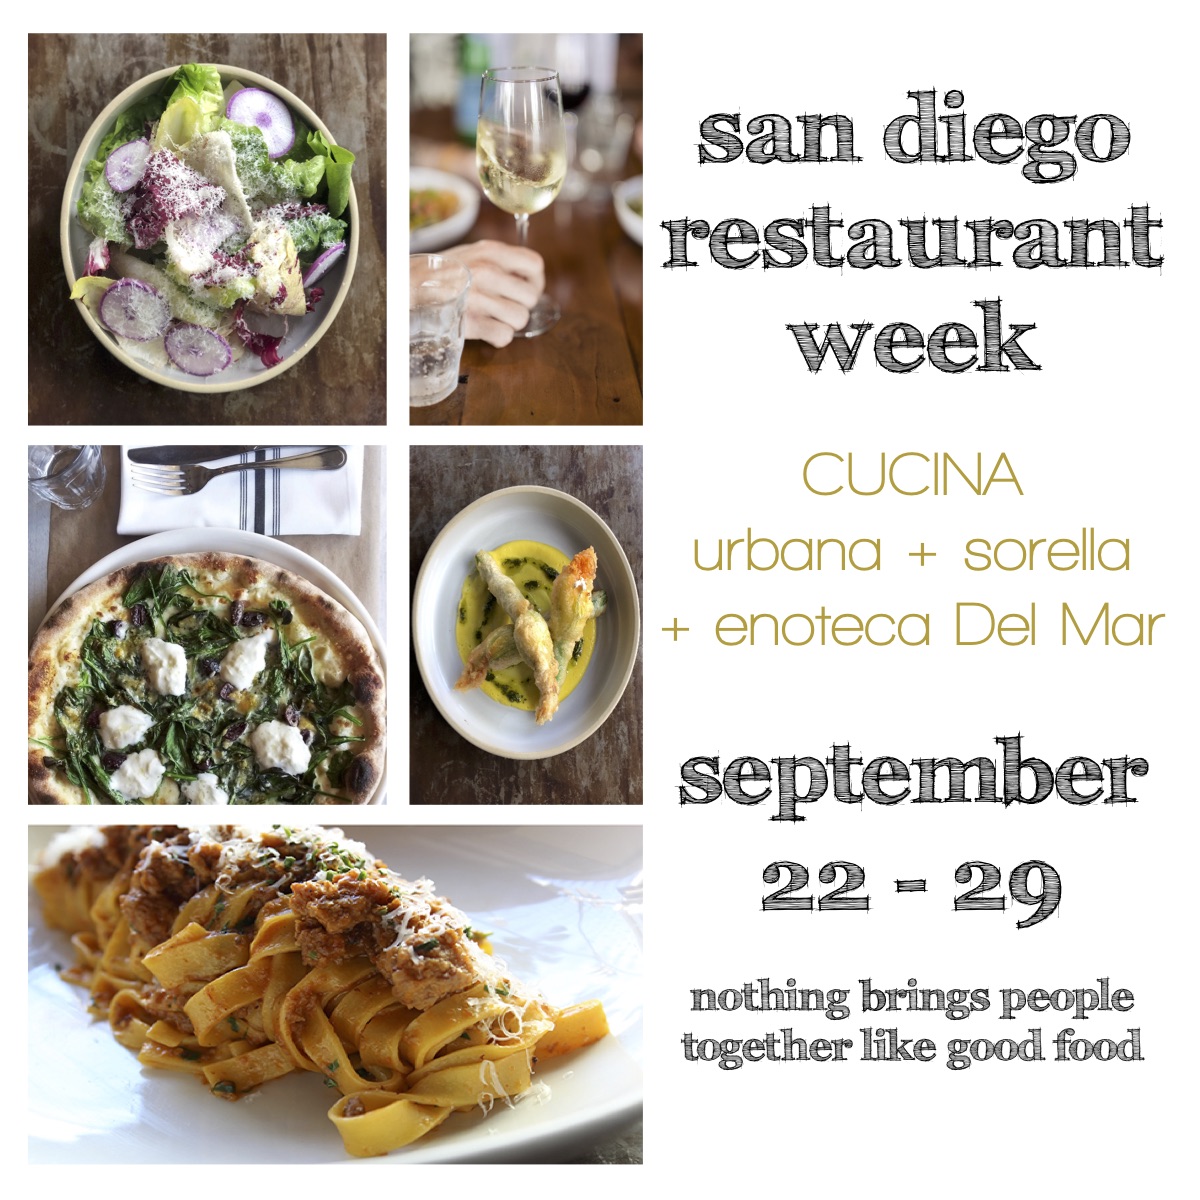 San Diego Restaurant Week at CUCINA